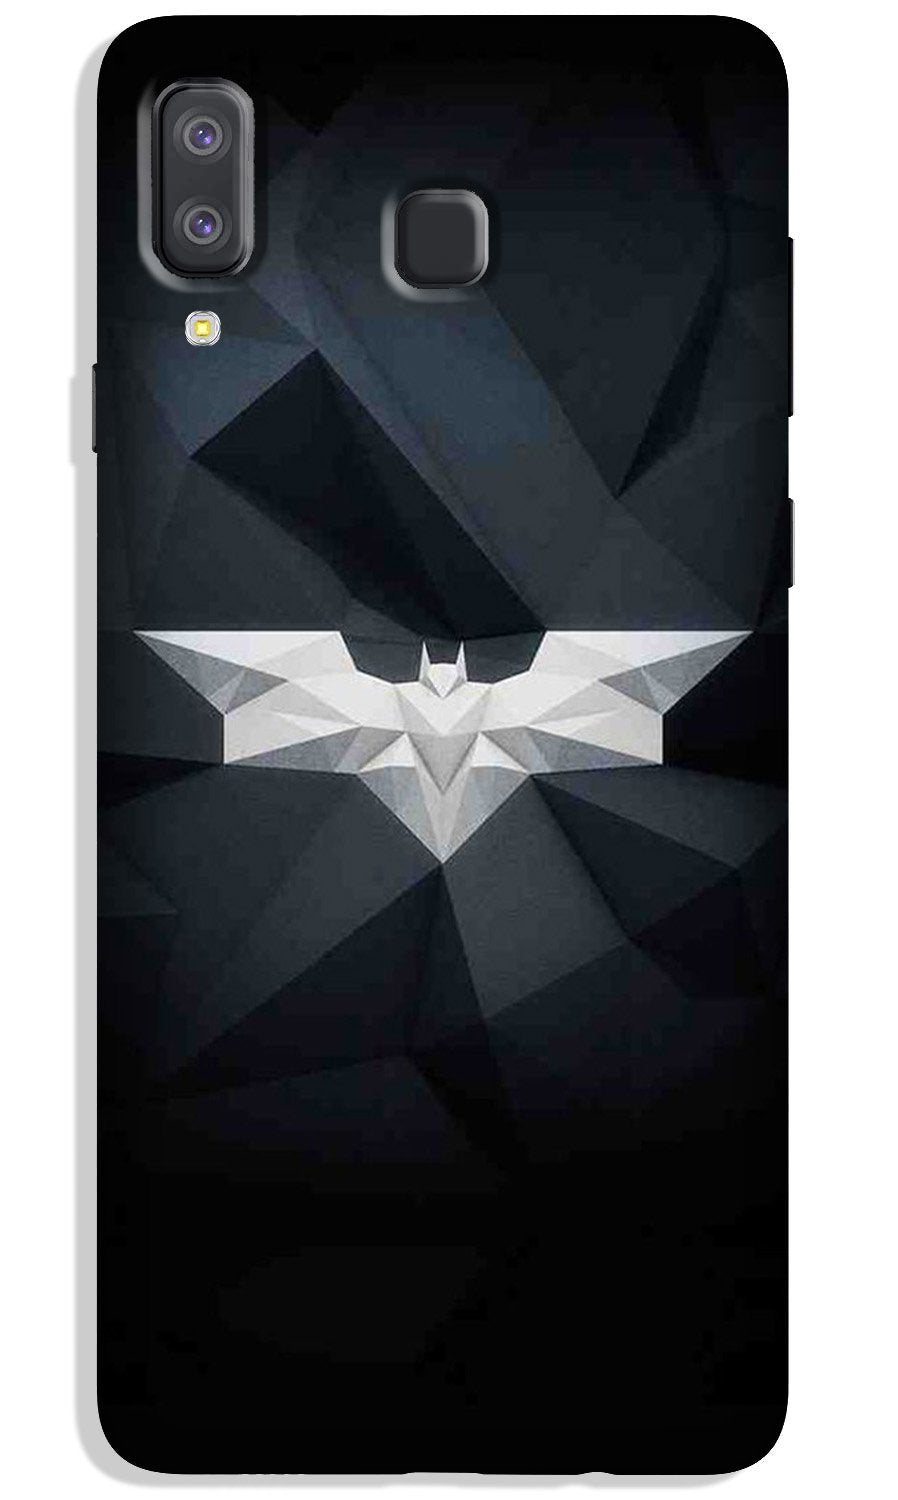 Batman Case for Galaxy A8 Star